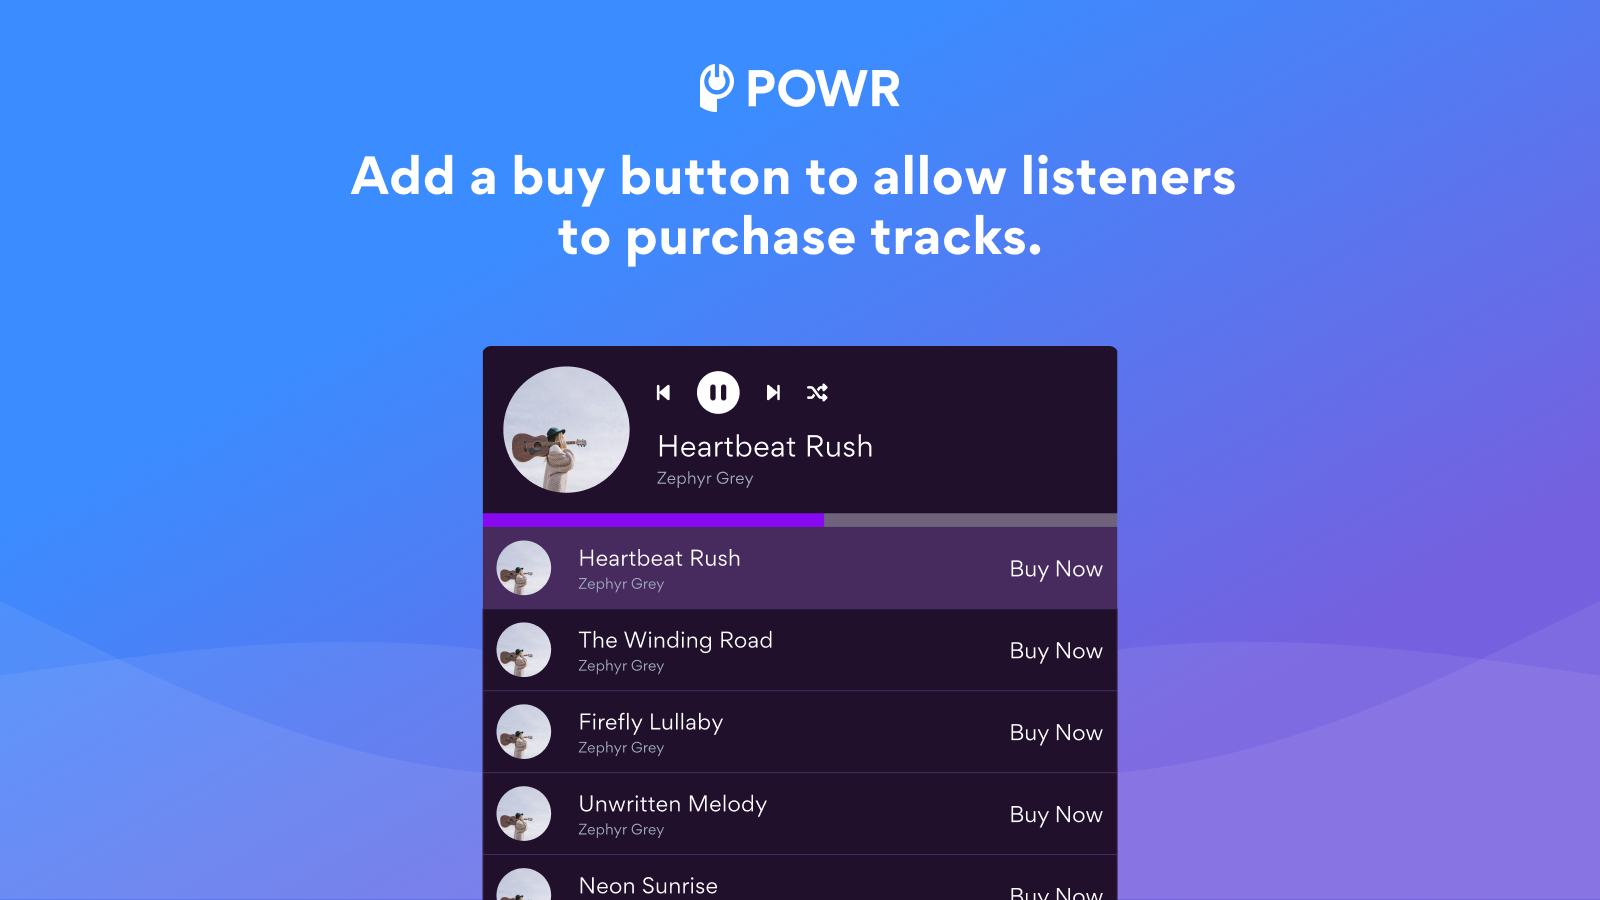 voeg een koopknop toe om luisteraars nummers te laten kopen